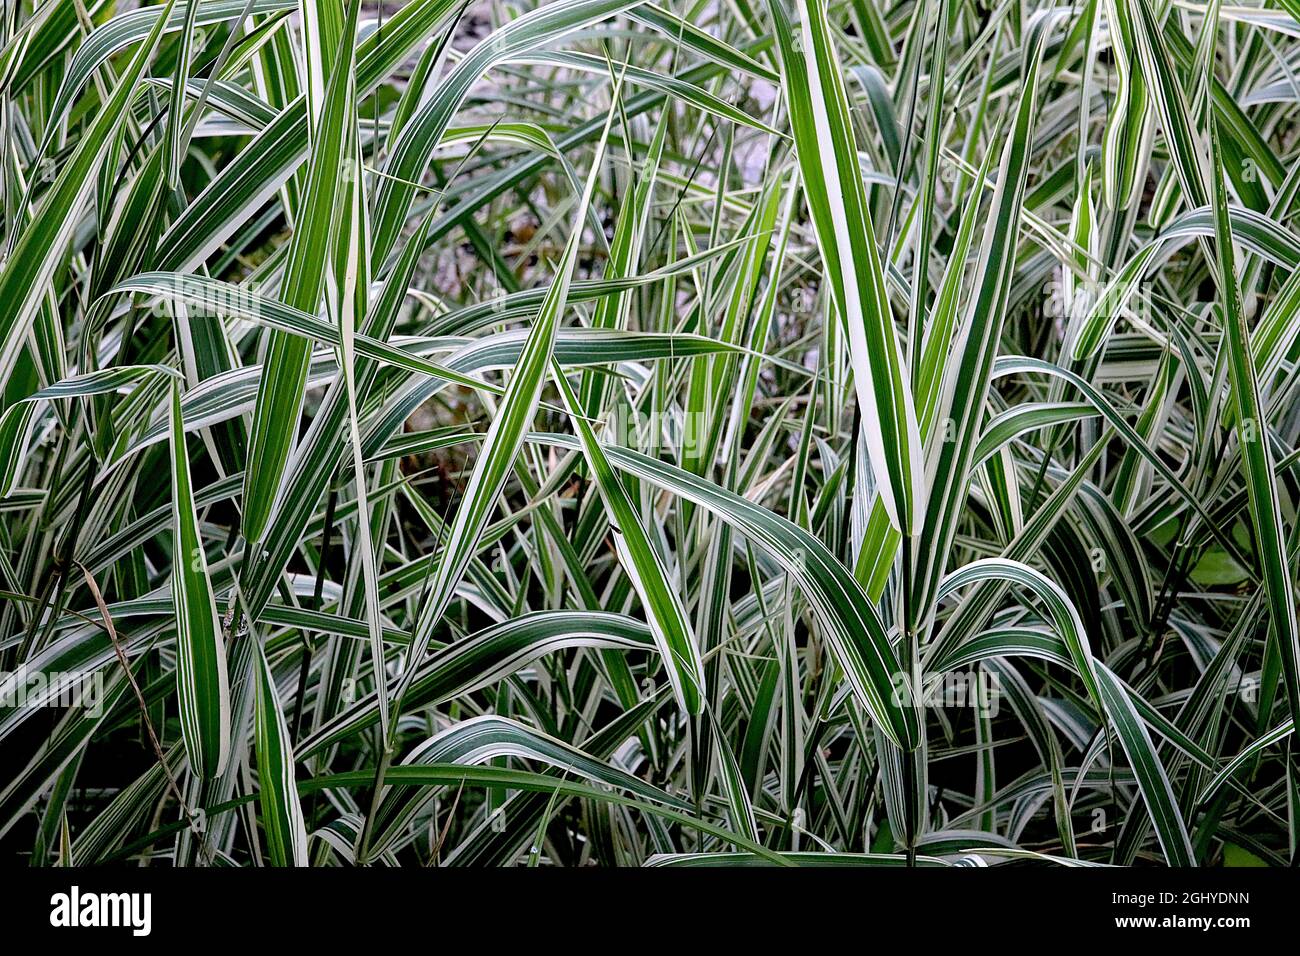 Pleioblastus fortunei ‘Variegata’ Zwergbambus mit weißen Streifen – hellcremefarbene Blätter mit mittleren und dunkelgrünen Streifen, August, England, Großbritannien Stockfoto